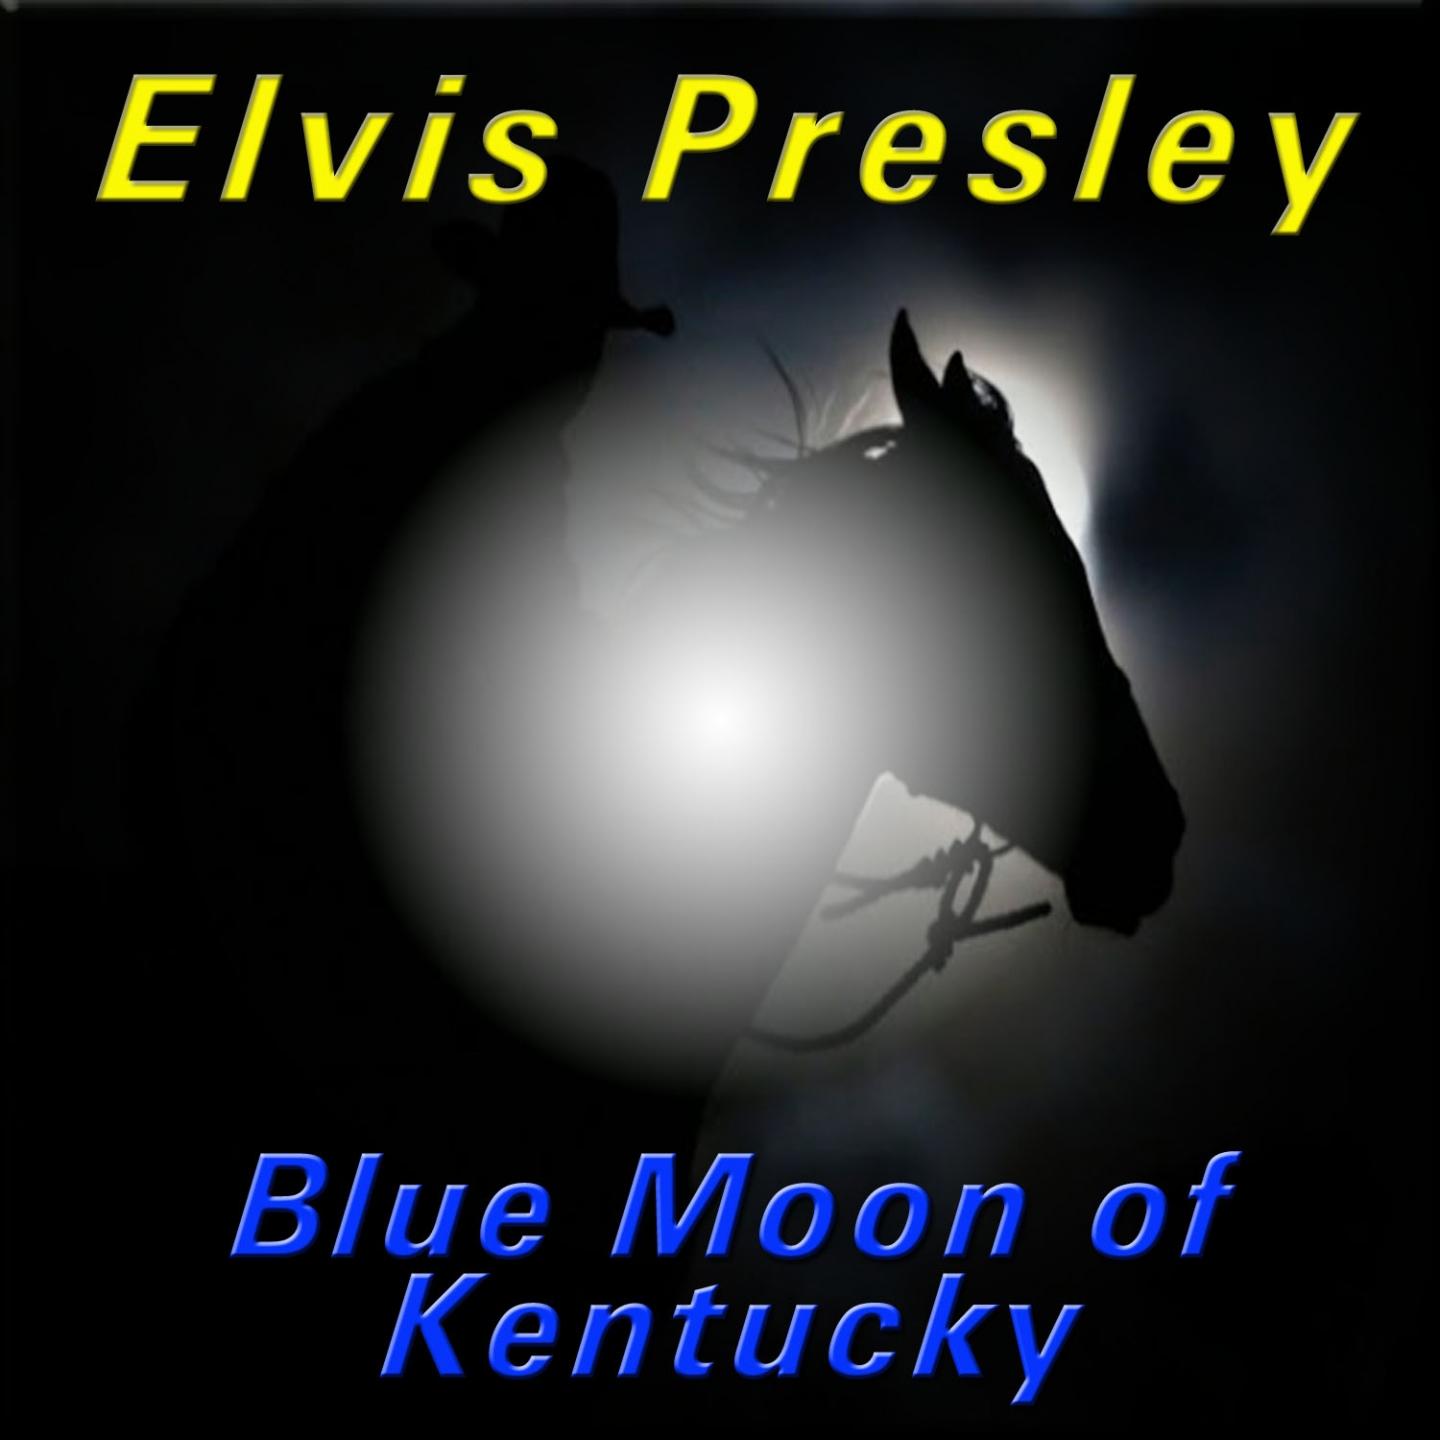 Blue Moon of Kentucky